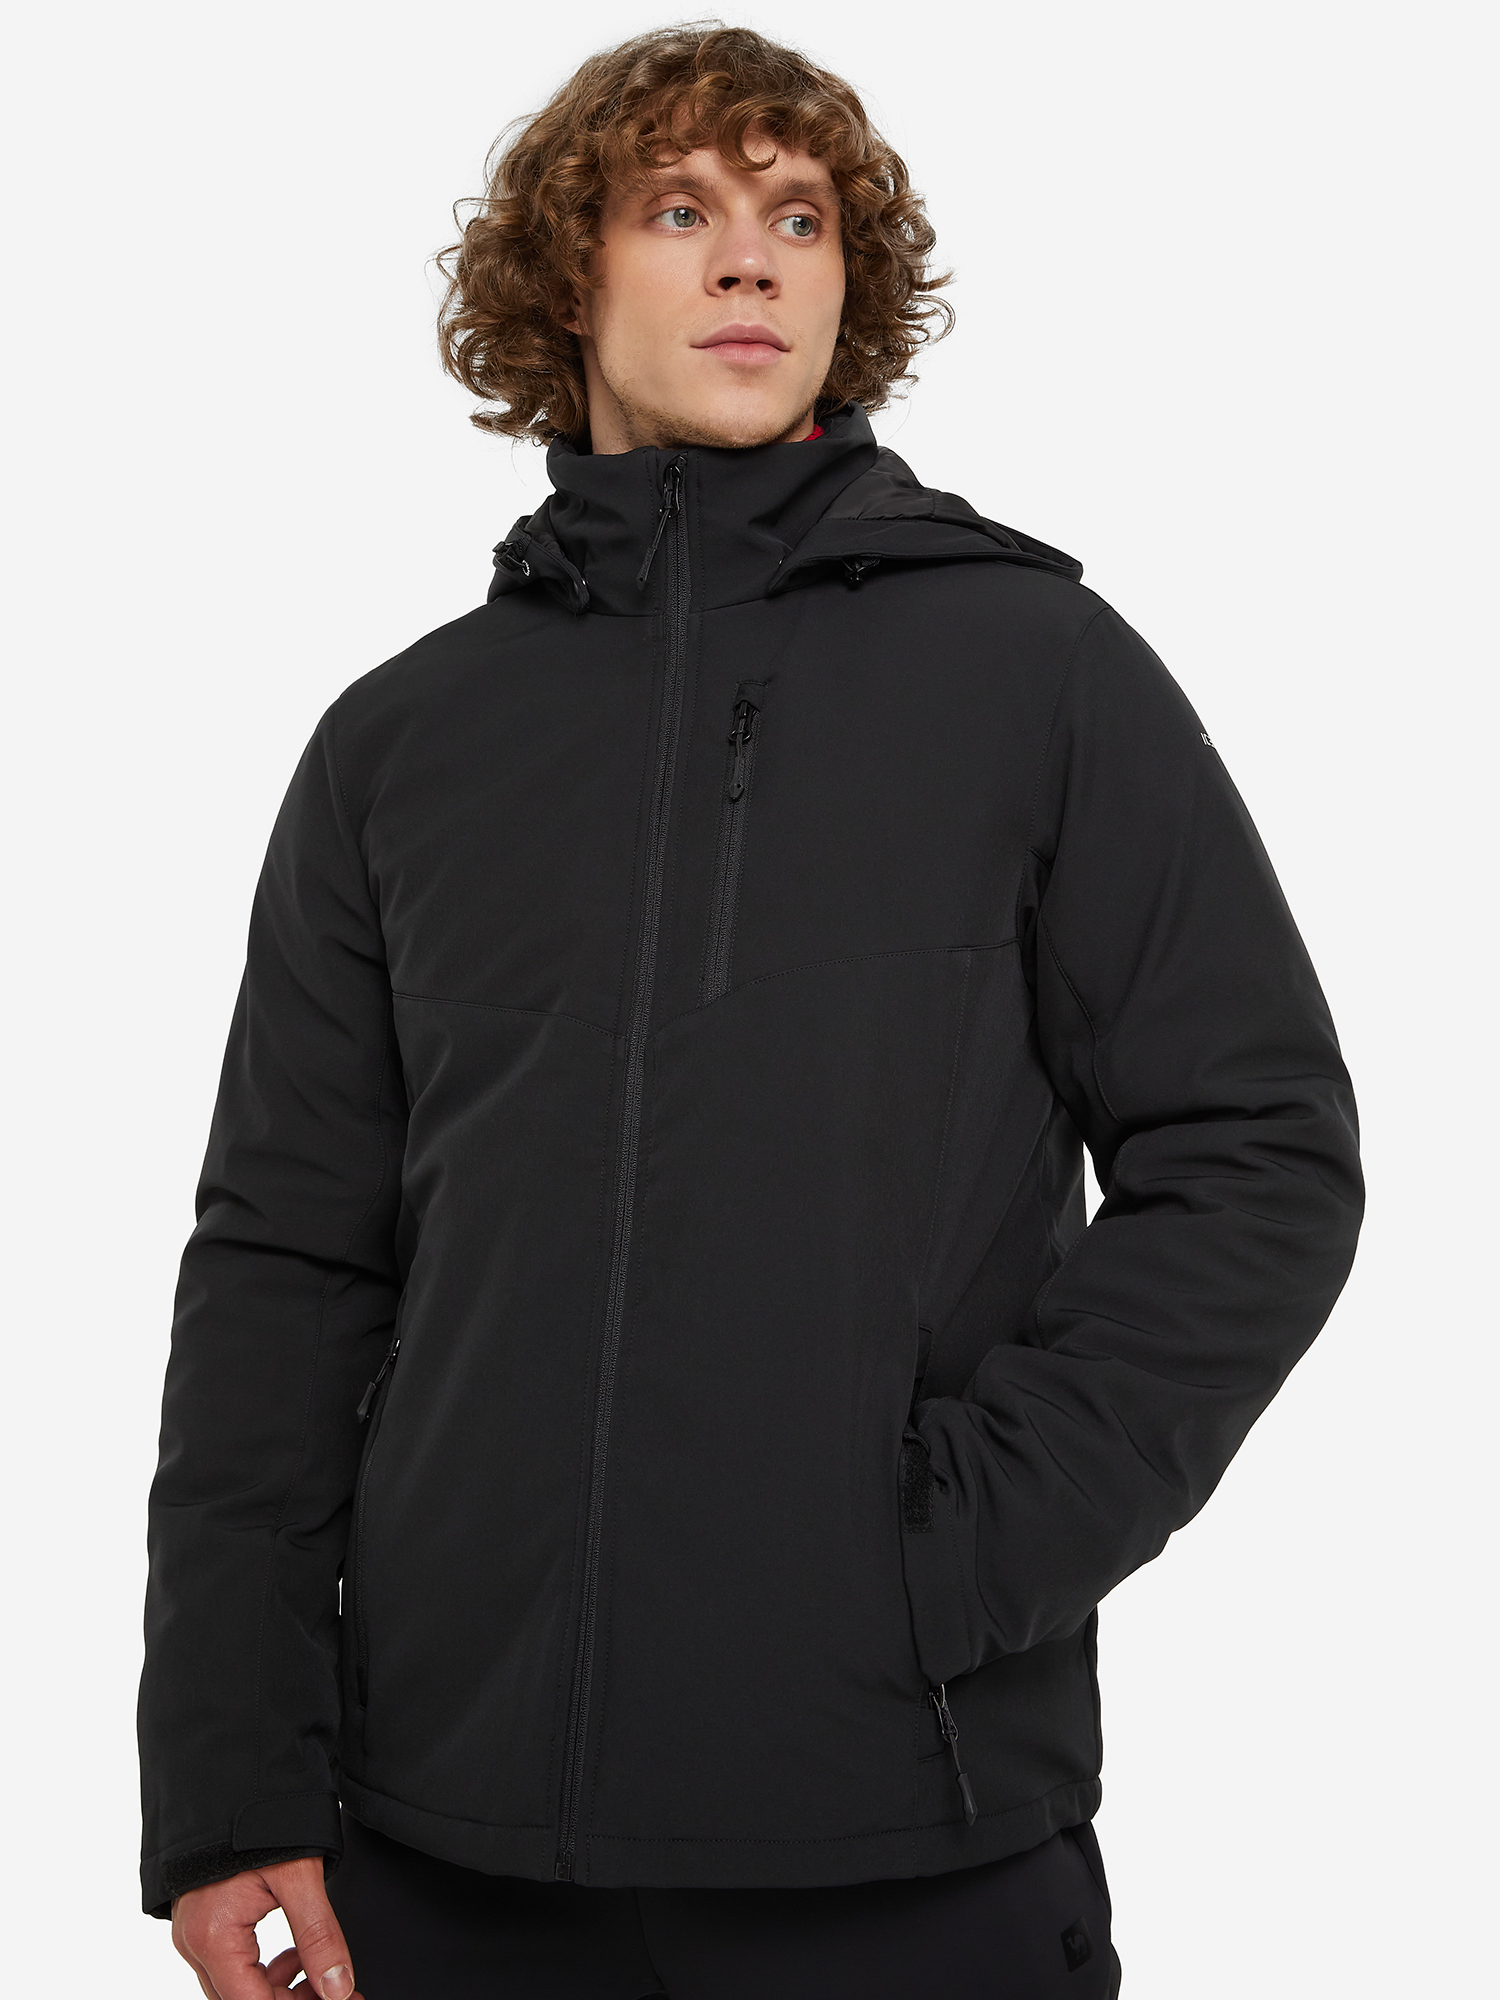 Куртка утепленная мужская IcePeak Vardaman, Черный куртка софтшелл мужская icepeak brimfield синий